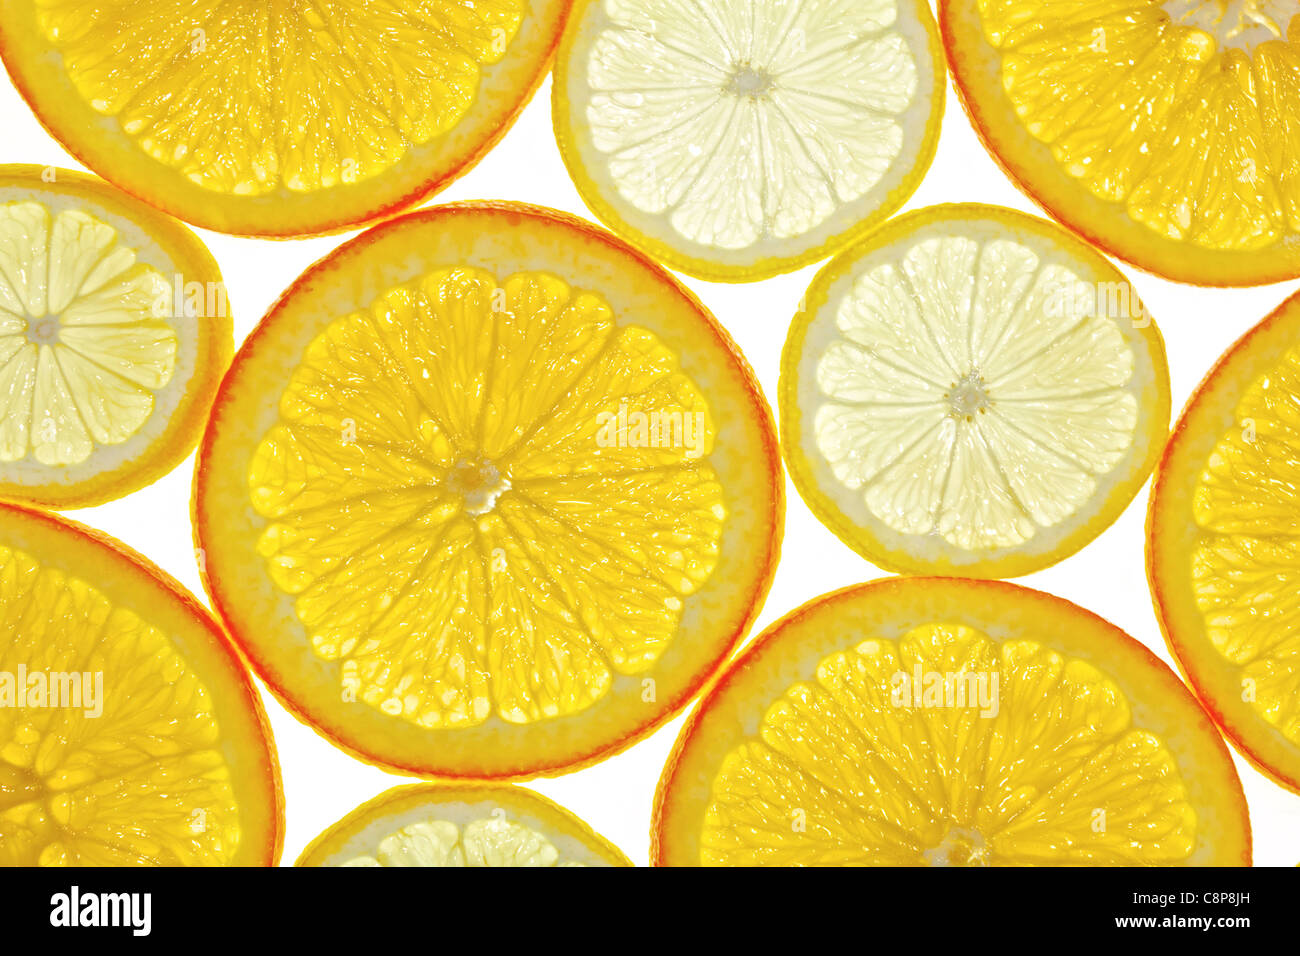 citrus slices Stock Photo